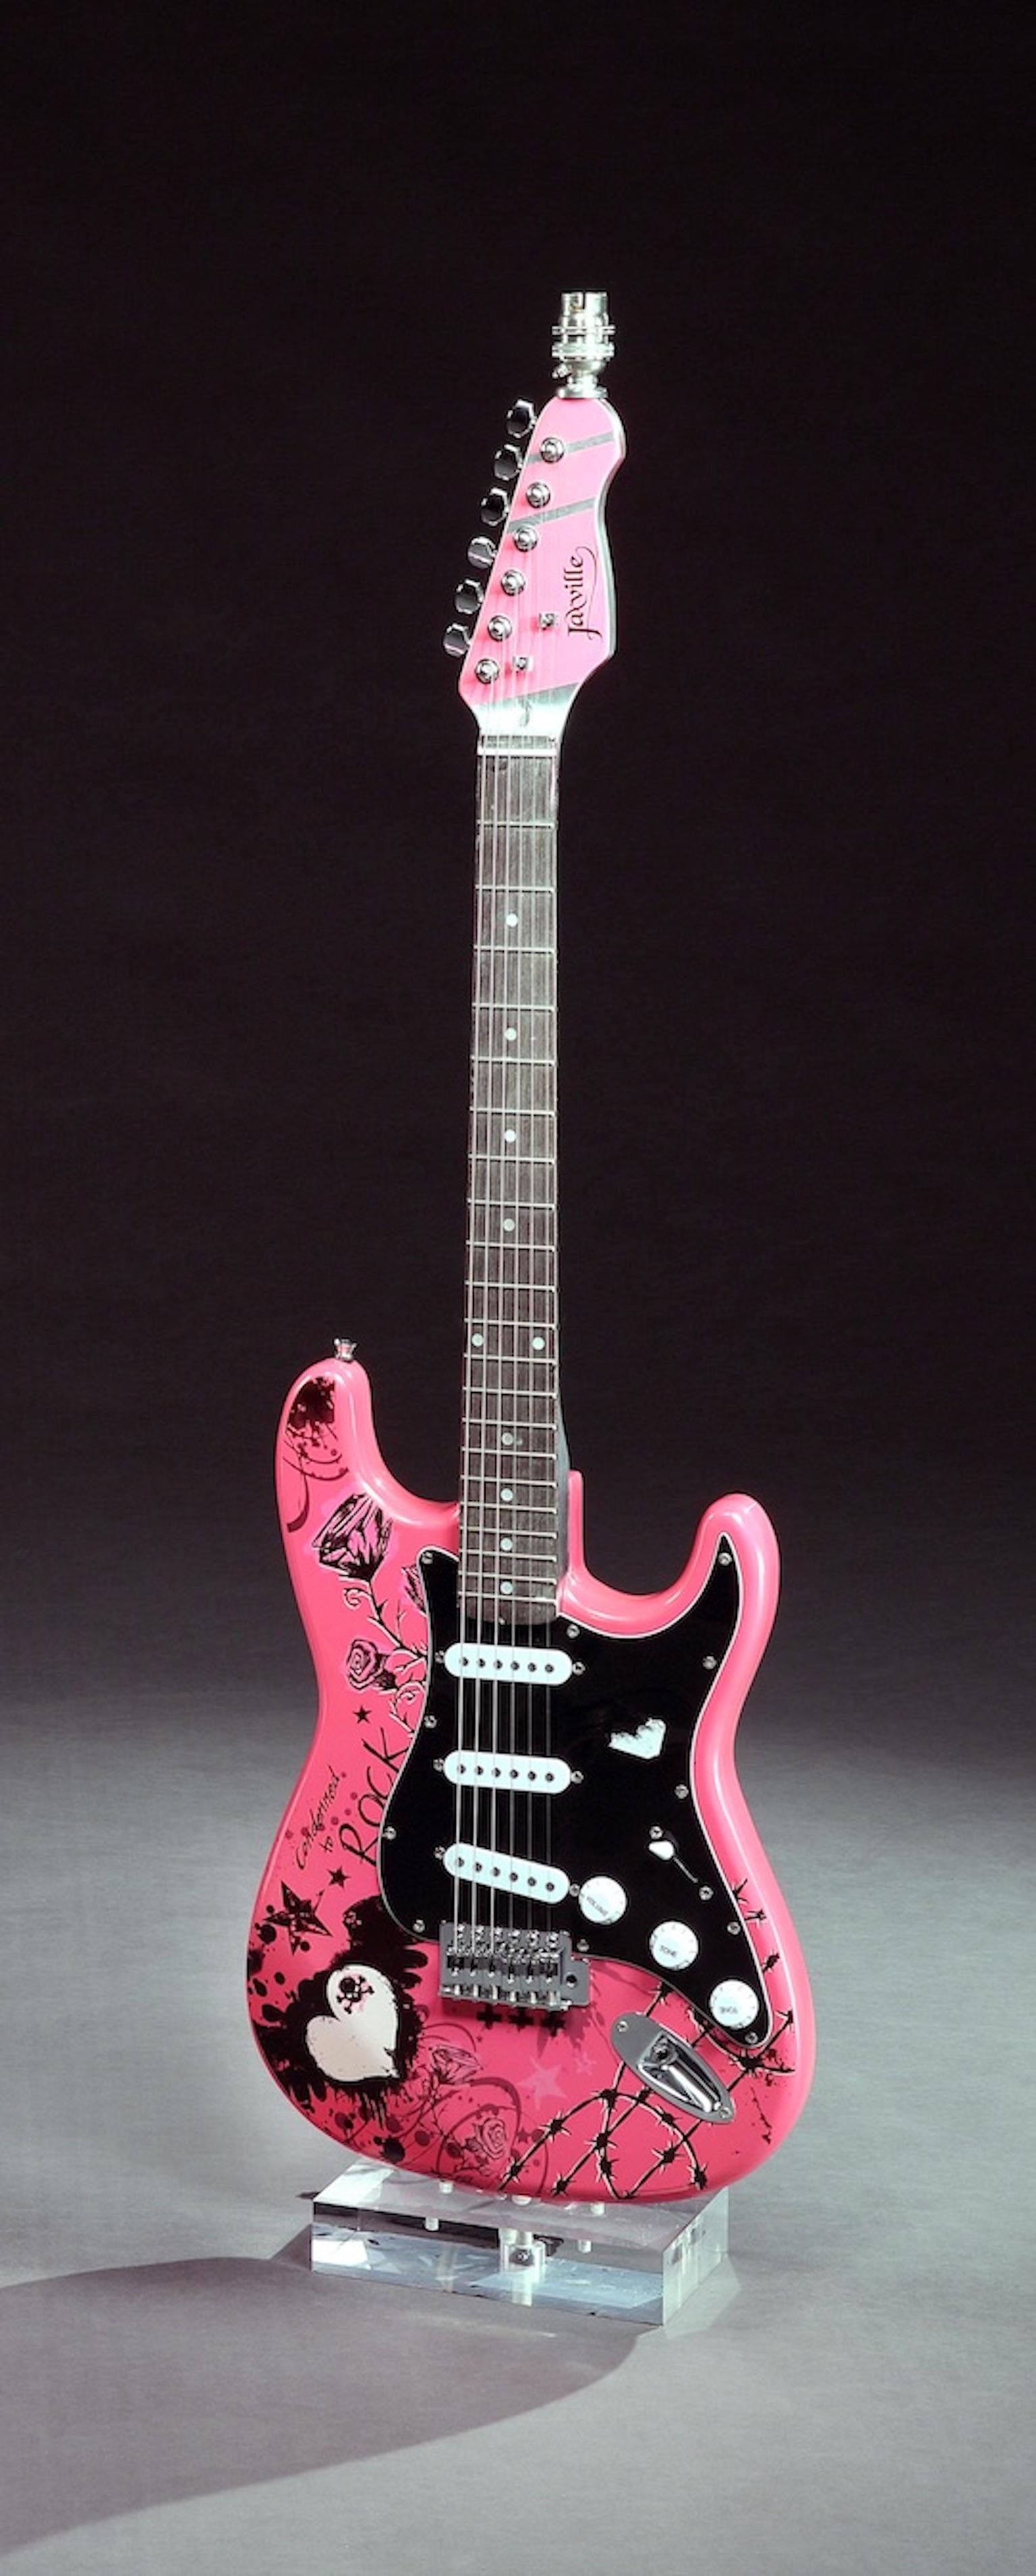 Vintage, Rock'n'Roll/Punk-Enthusiasten Lampe/Gitarre, die leicht geklimpert oder gespielt werden kann. Upcycled aus einer alten rosa Punk-Gitarre für die anspruchsvolle Rockerin. Diese Gitarre strahlt Persönlichkeit und Stil aus, und zwar aus jedem